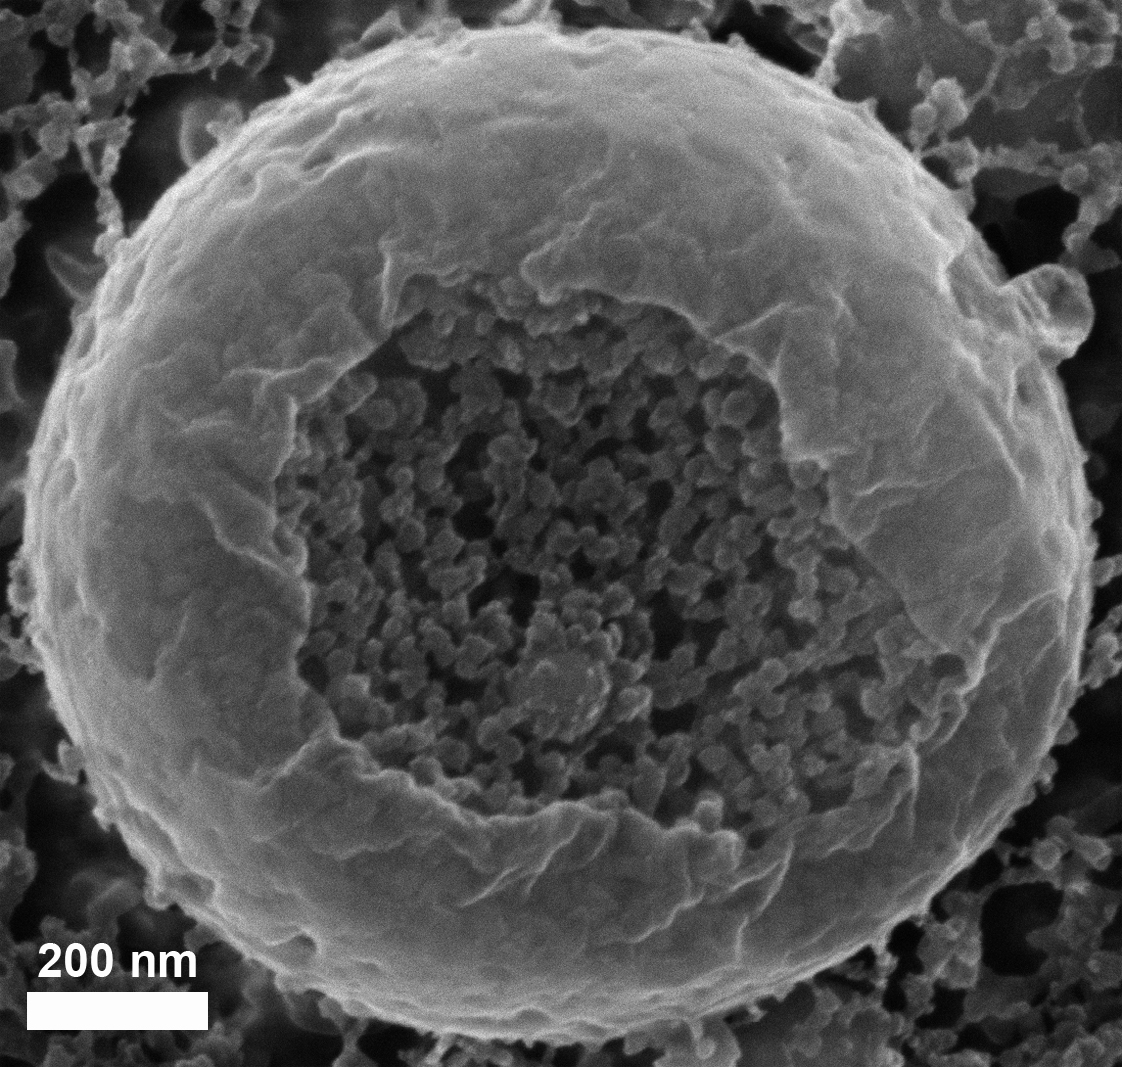 צילום במיקרוסקופ אלקטרונים סורק: שלפוחית המכילה ננו-כדוריות של סידן פחמתי, שגודלן 20 עד 30 ננו-מטרים, בדגימת עובר קיפוד ים קפואה